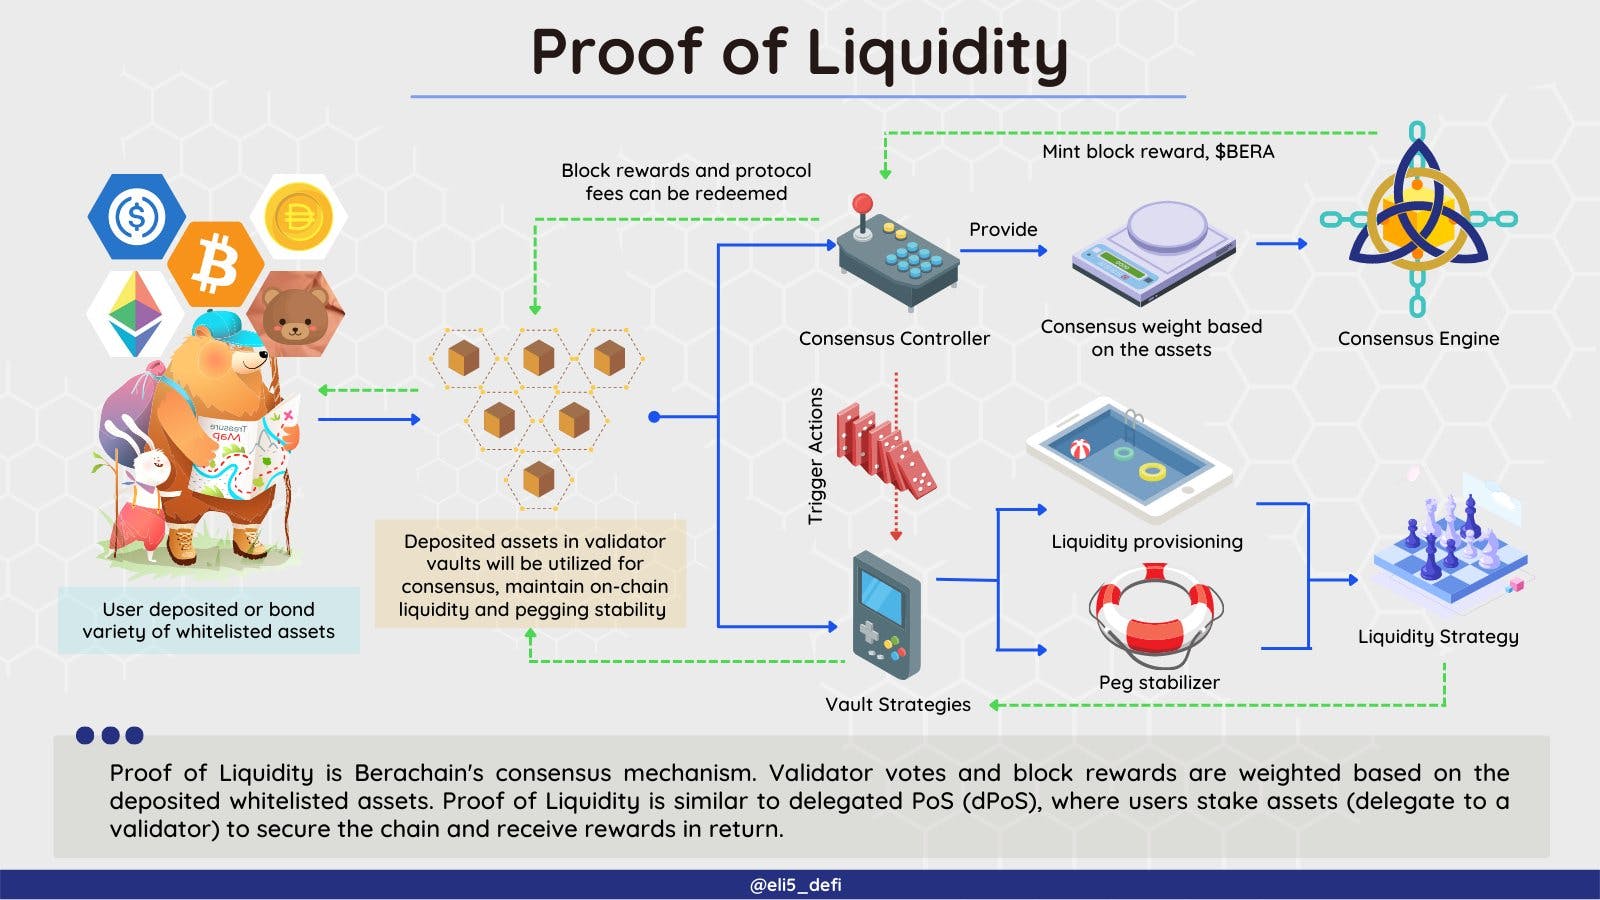 Proof of Liquidity explained (https://twitter.com/eli5_defi/status/1601961508204081152)